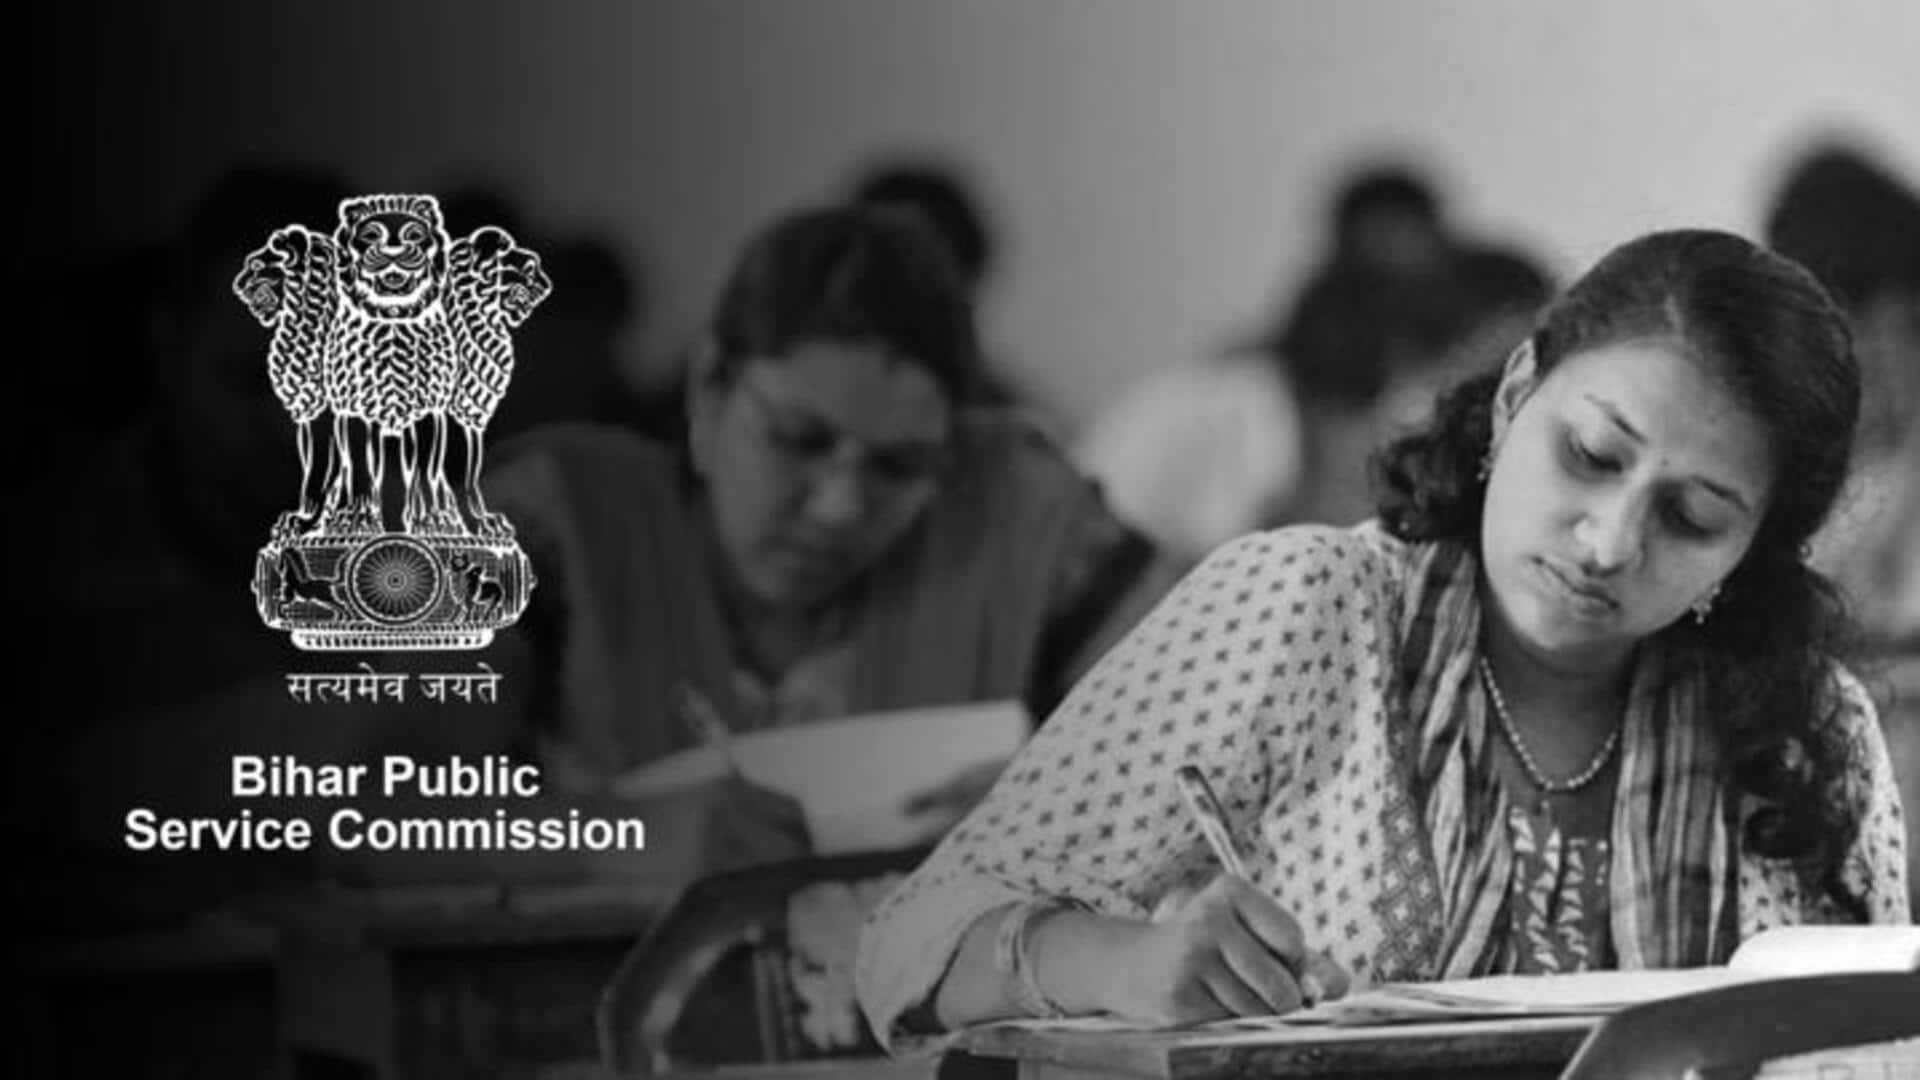 बिहारः 69वीं संयुक्त प्रतियोगिता परीक्षा के लिए कल से शुरू होंगे आवेदन, जानिए शैक्षिक योग्यता